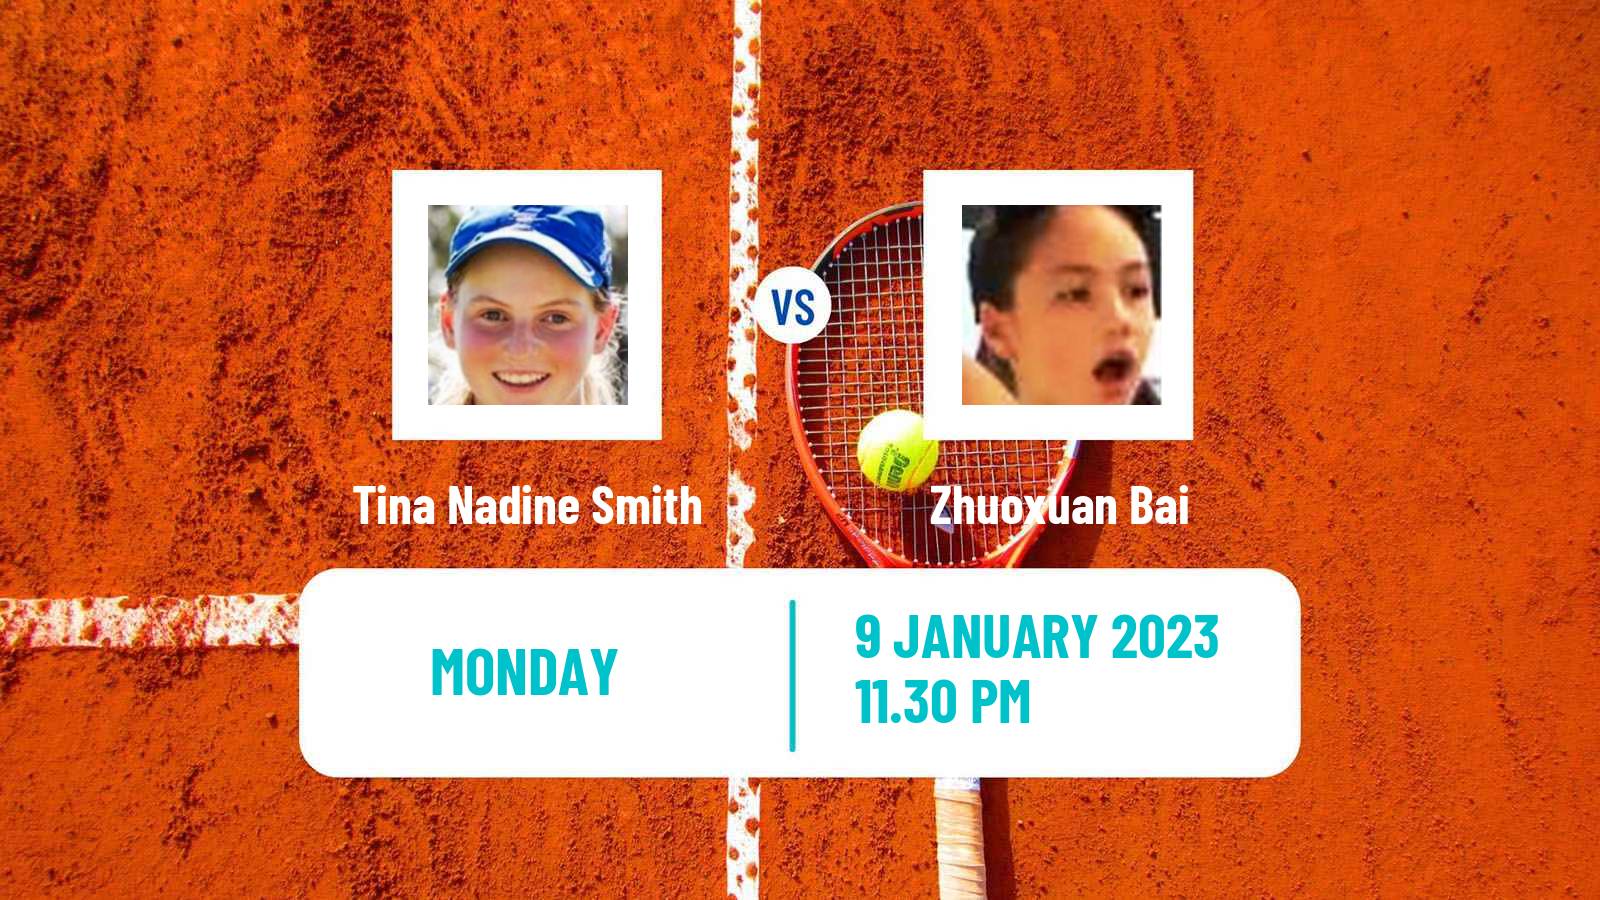 Tennis ITF Tournaments Tina Nadine Smith - Zhuoxuan Bai